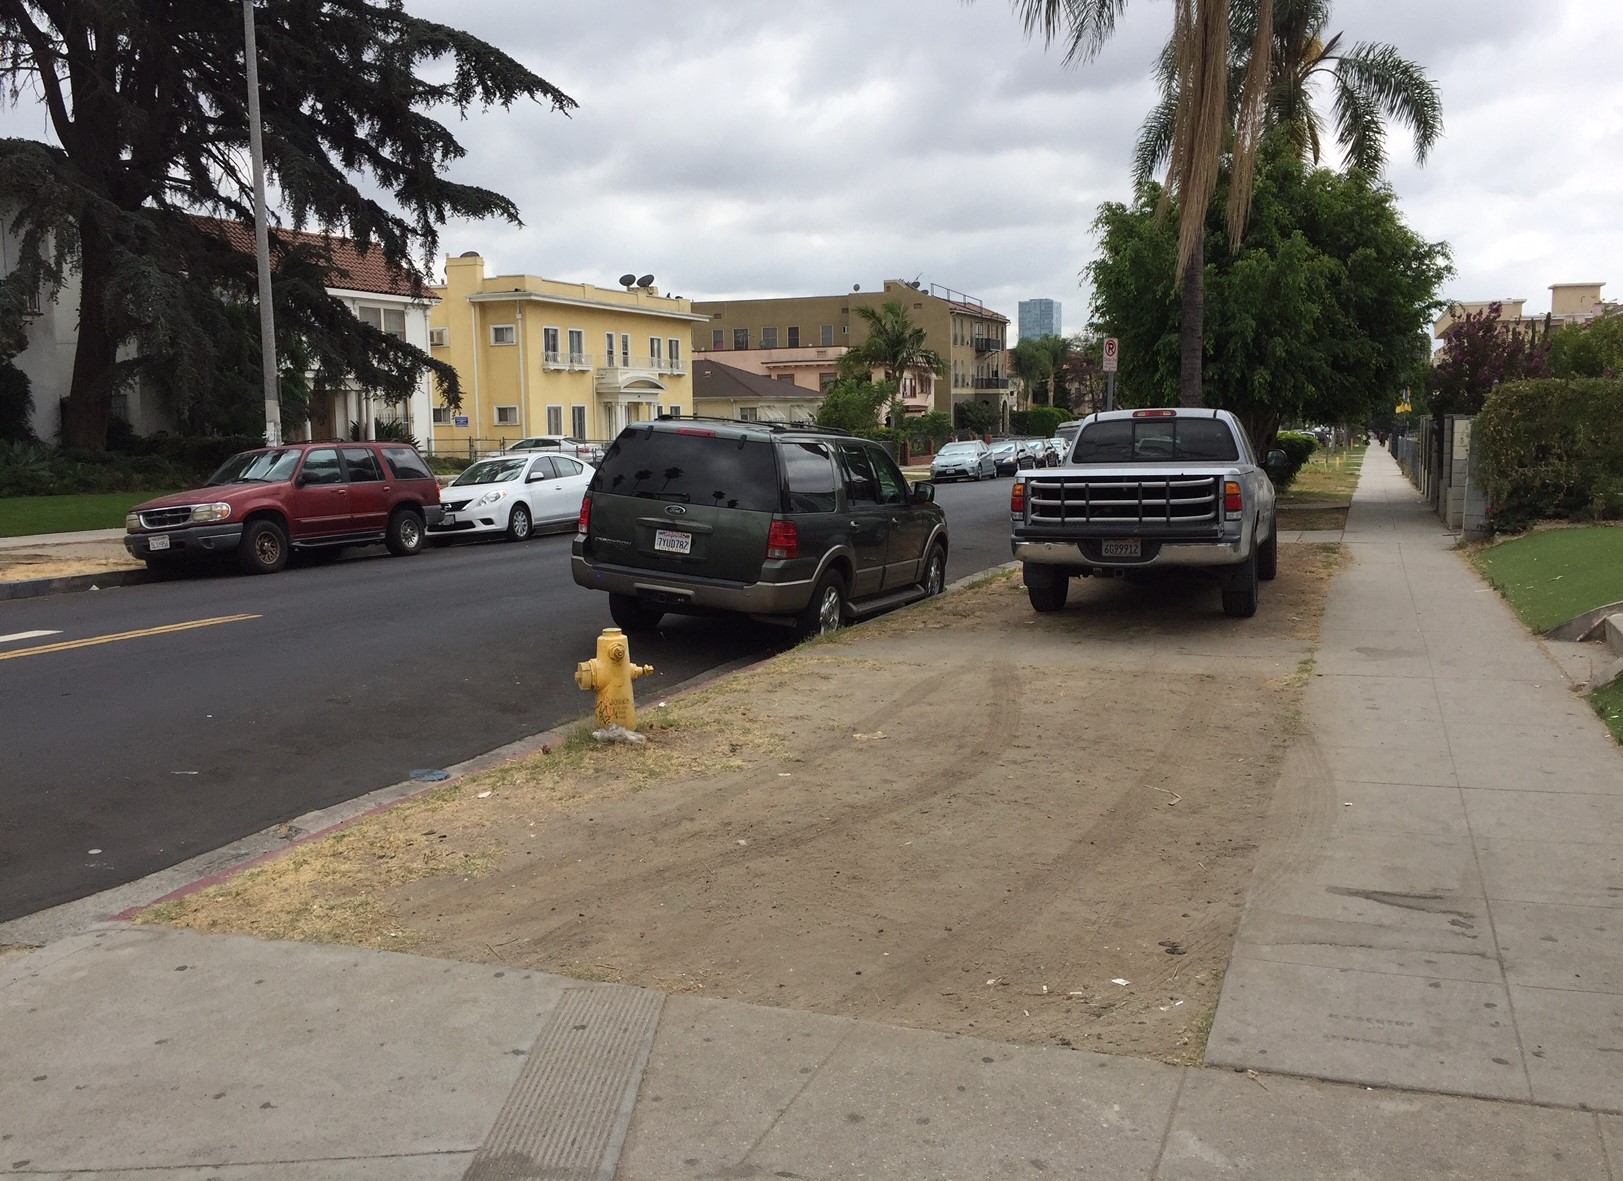 Parking in LA